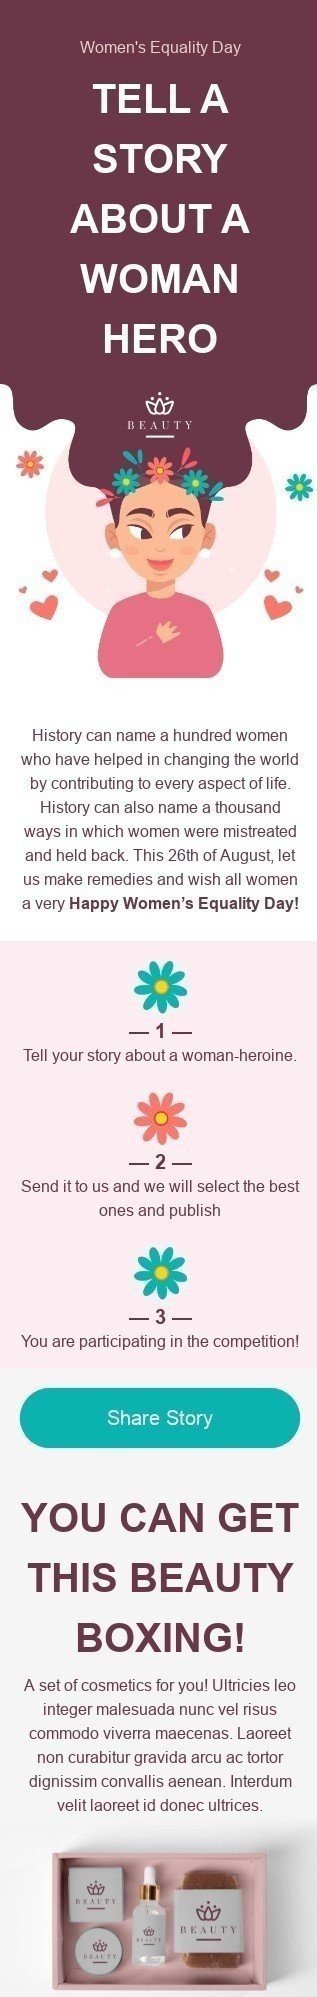 Modelo de E-mail de «Conte sua historia» de Dia Internacional da Igualdade Feminina para a indústria de Beleza e Cuidados Pessoais Visualização de dispositivo móvel